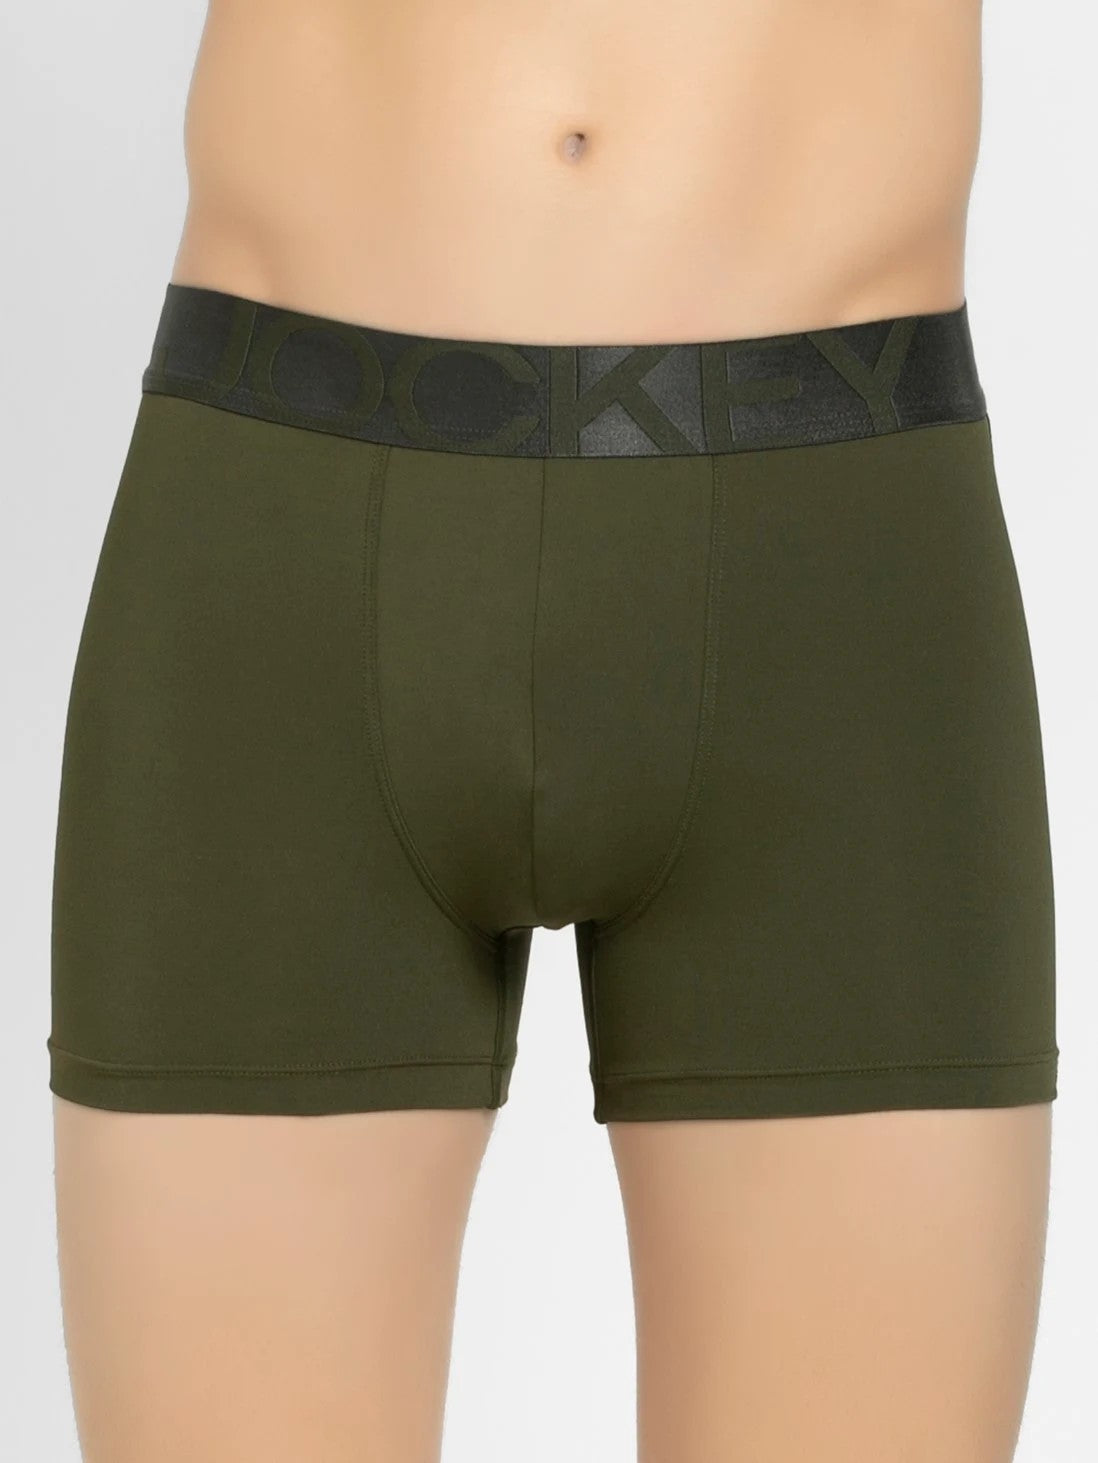 JOCKEY MEN'S INNERWEAR Tagged Jockey Underwear - FineBrandz